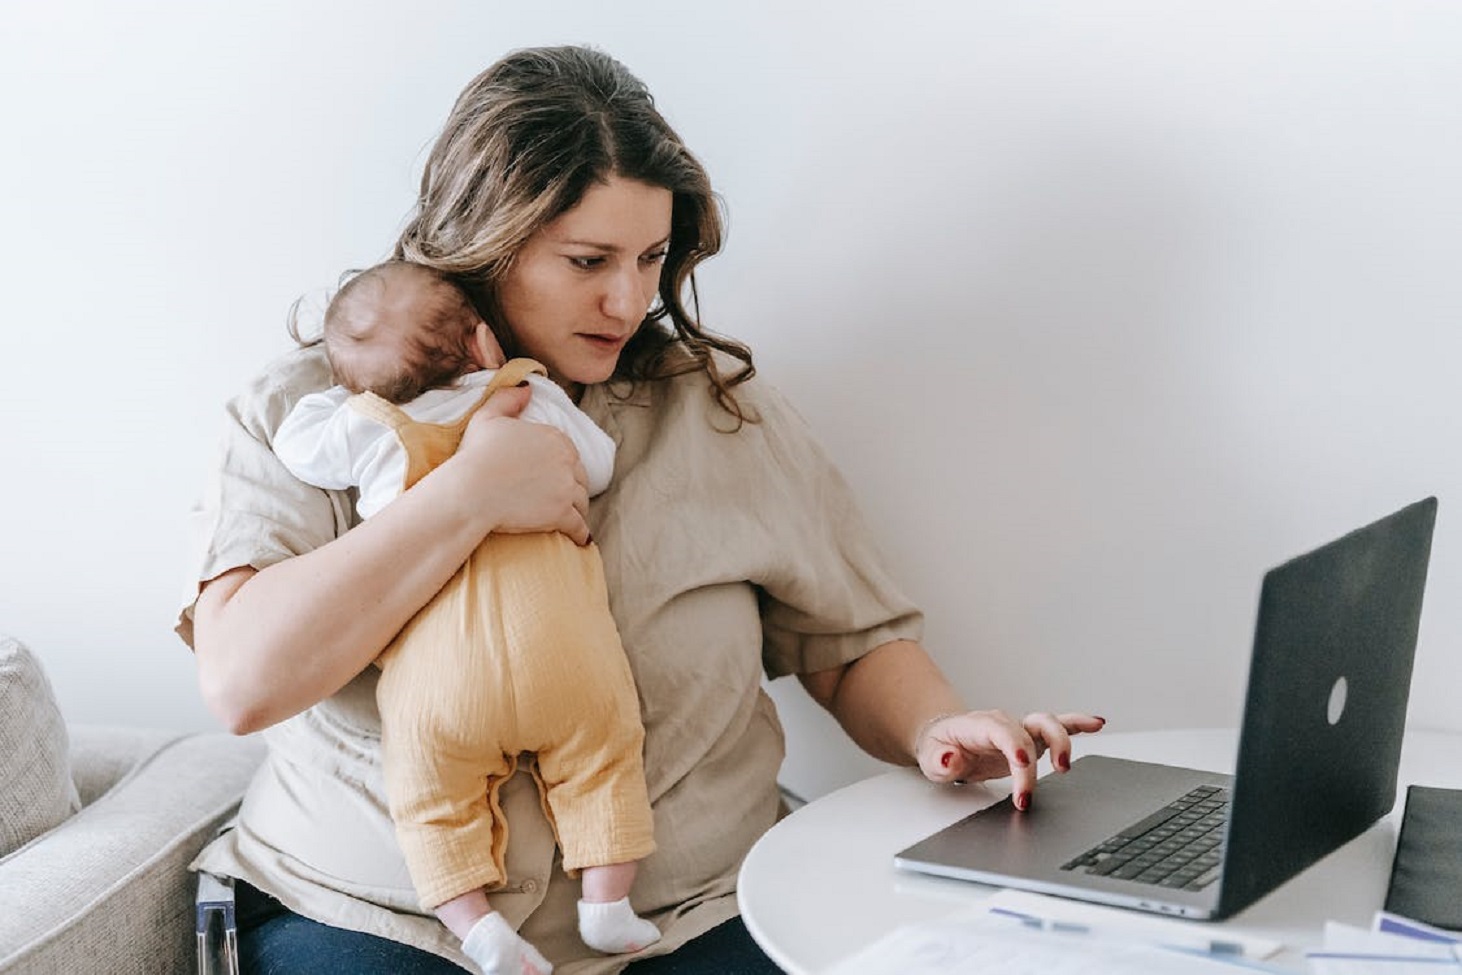 مشروع مربح من المنزل للأمهات العاملات: استغلي وقتك بشكل إيجابي